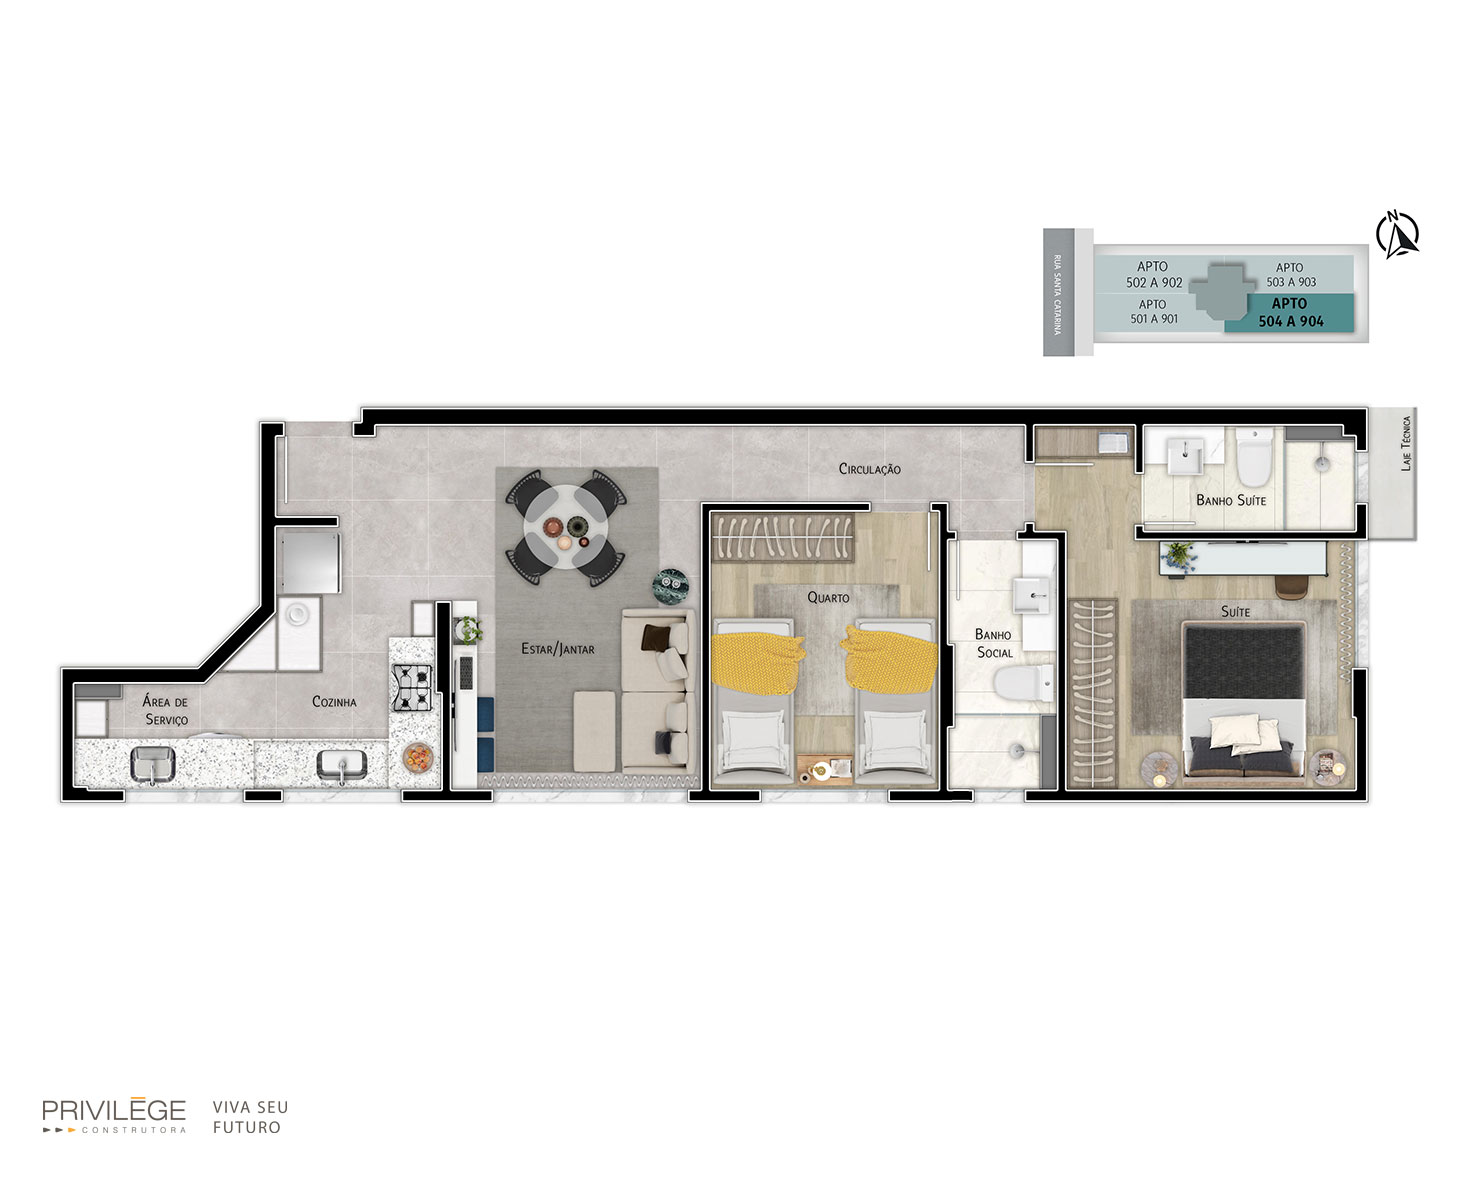 Apartamento 2 quartos – 504 a 904